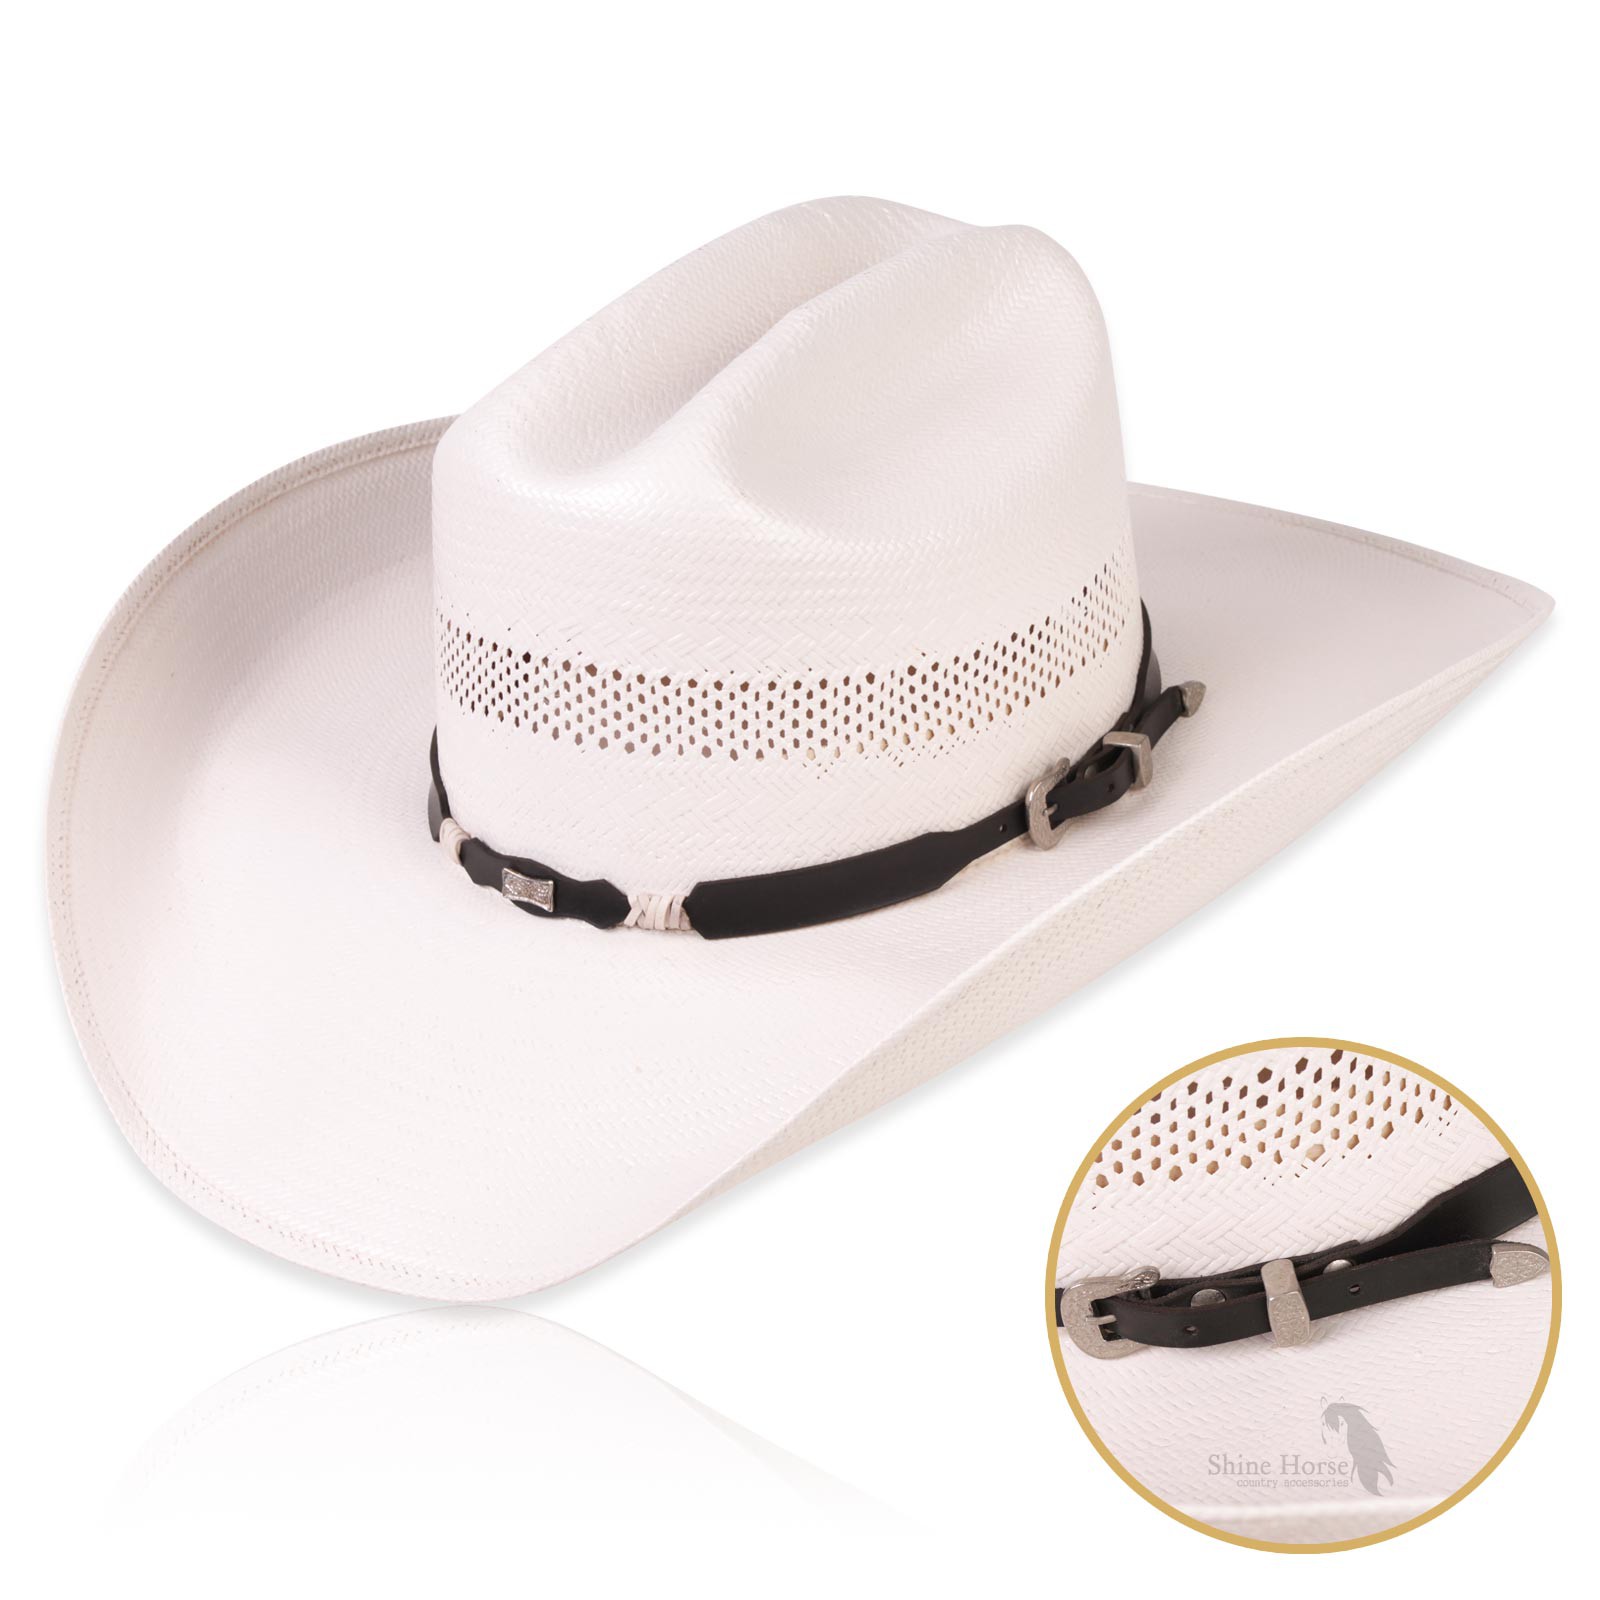 Shine Horse: Fitas e bandinhas para chapéu - Shine Horse - Country  accessories